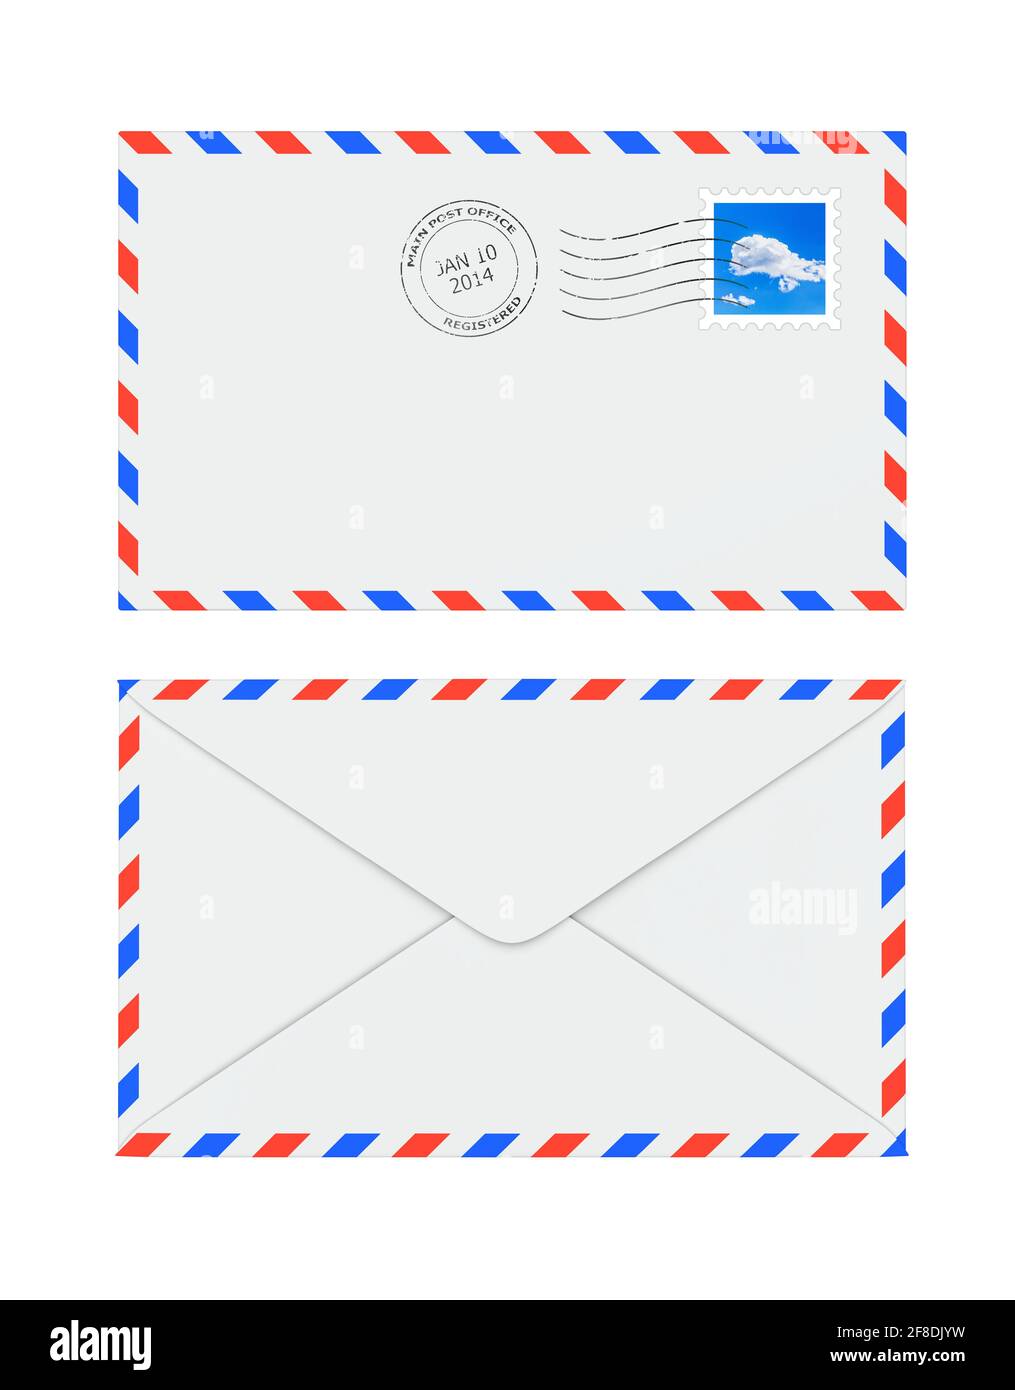 Enveloppe à lettres isolée avec timbre-poste et cachet de la poste Banque D'Images